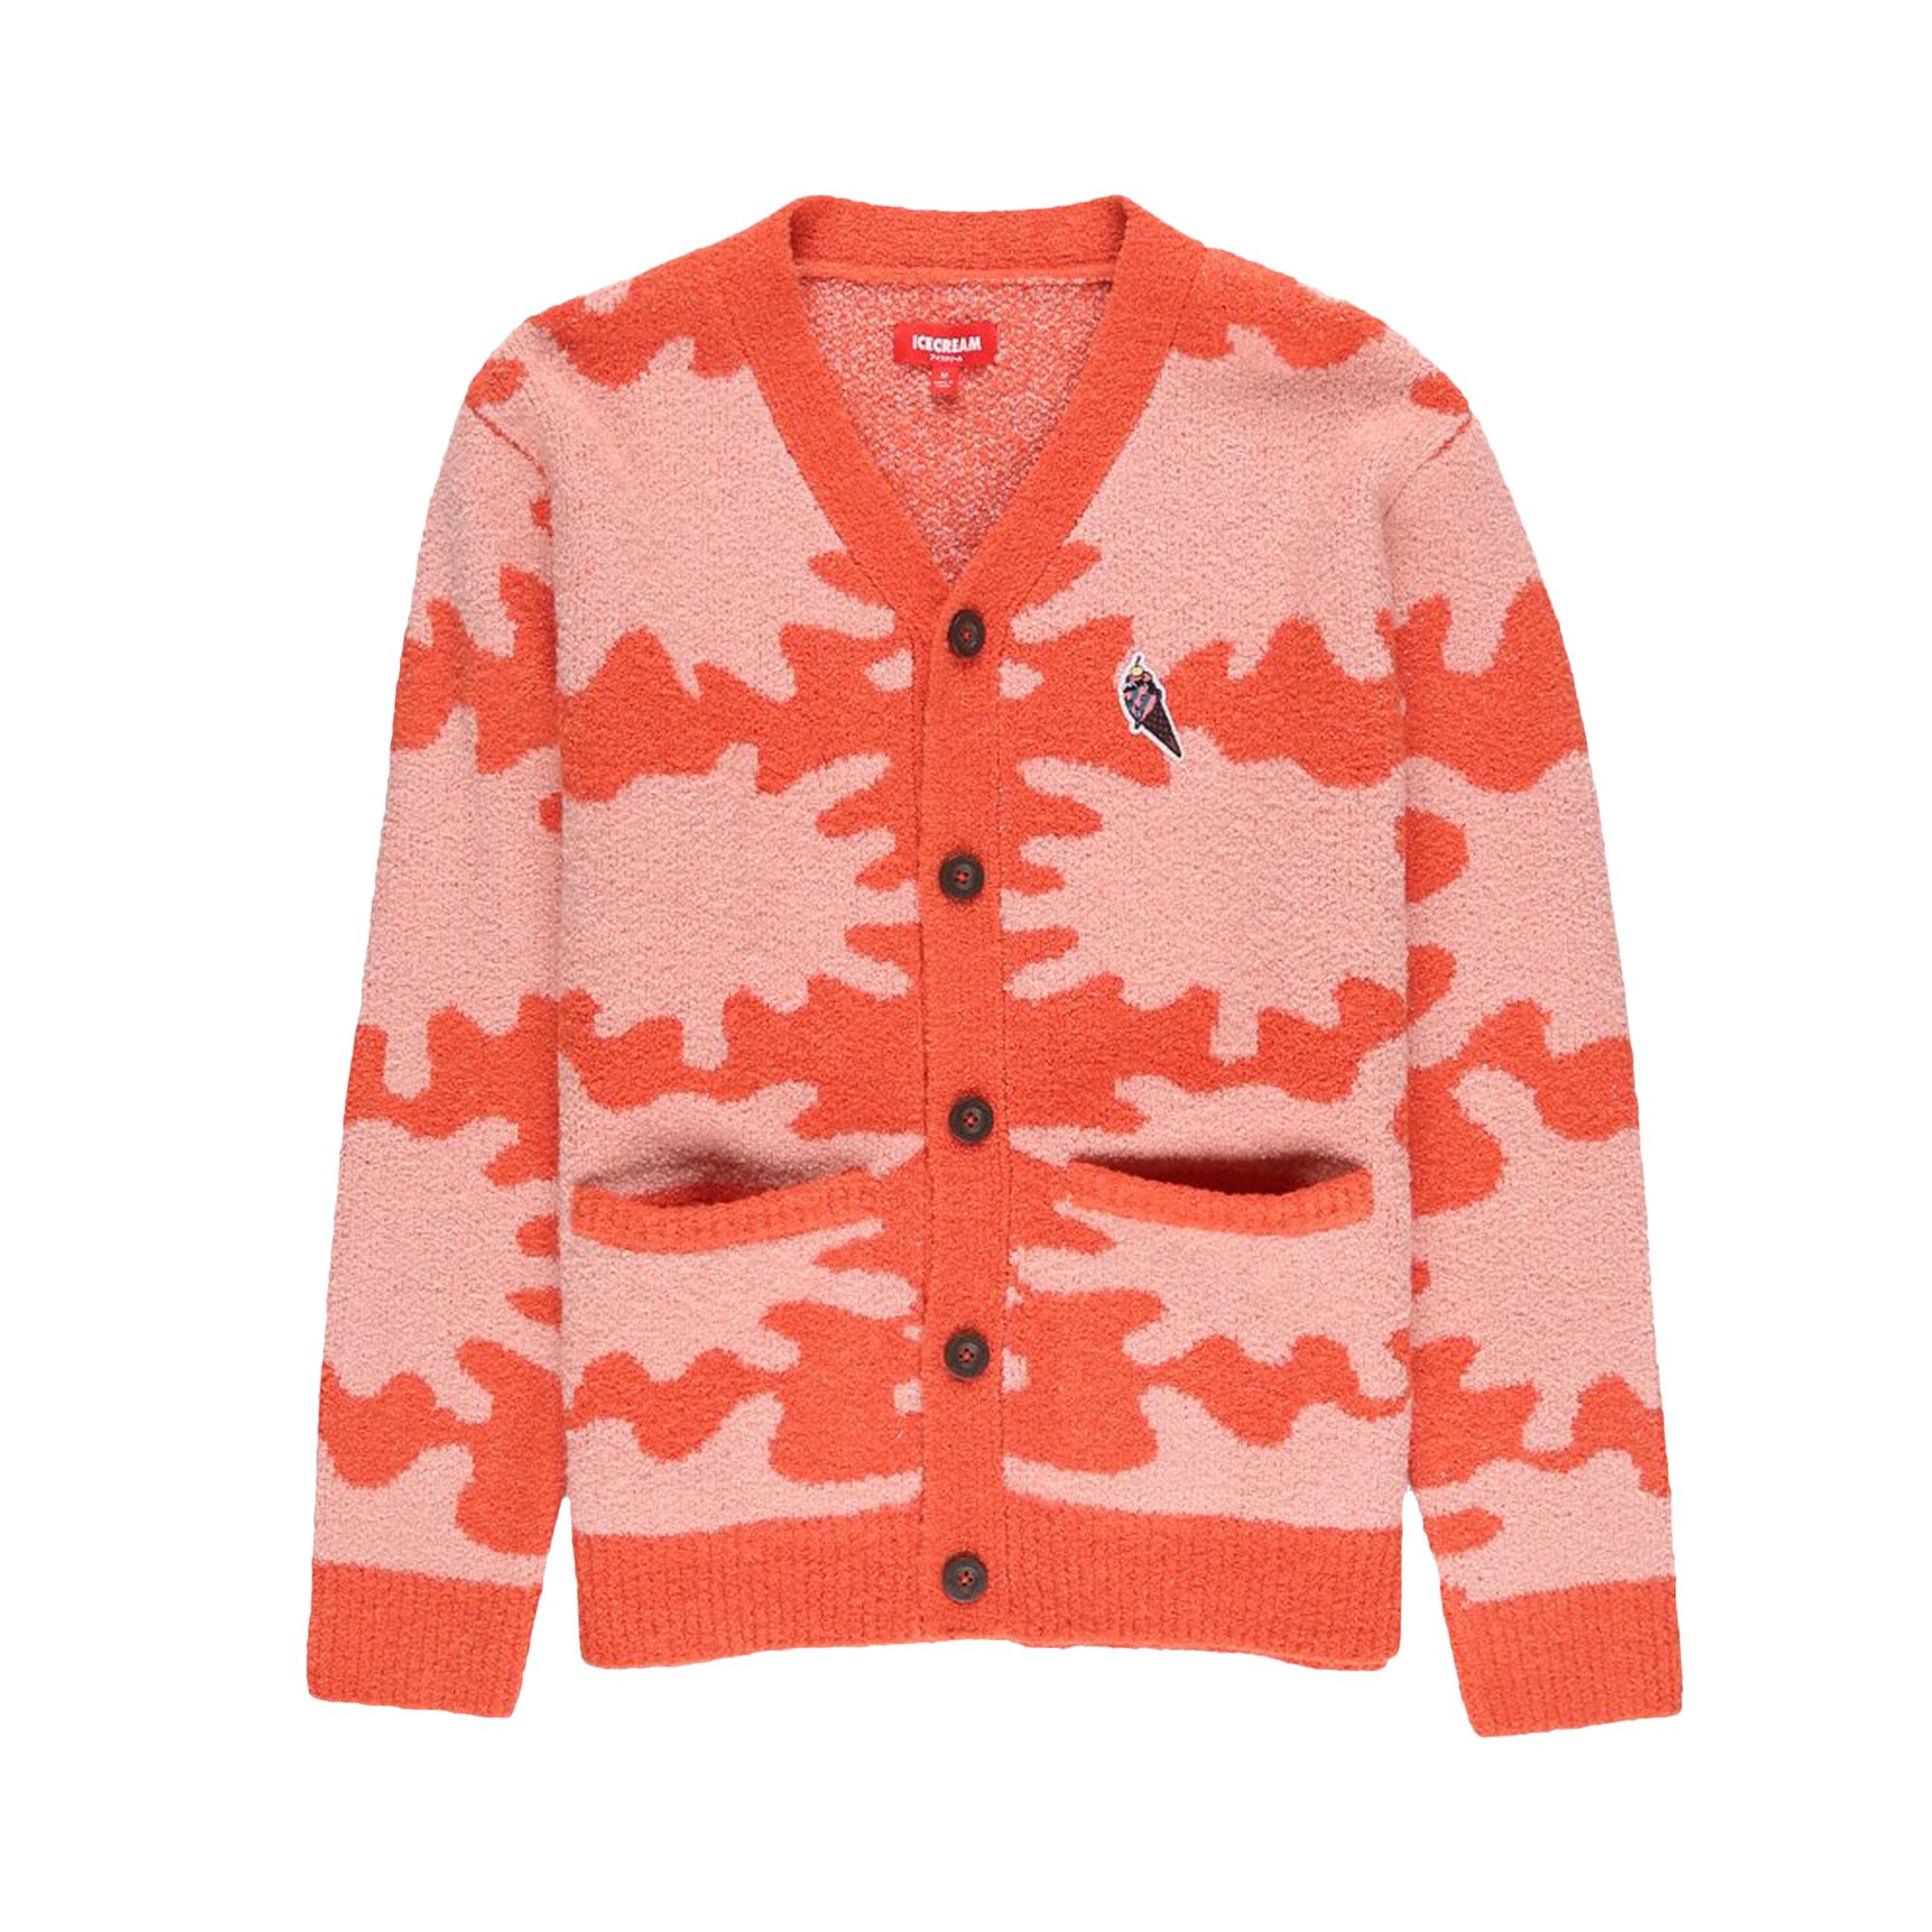 Buy Icecream Splat Sweater 'True Red' - 431 1500 TRUE | GOAT